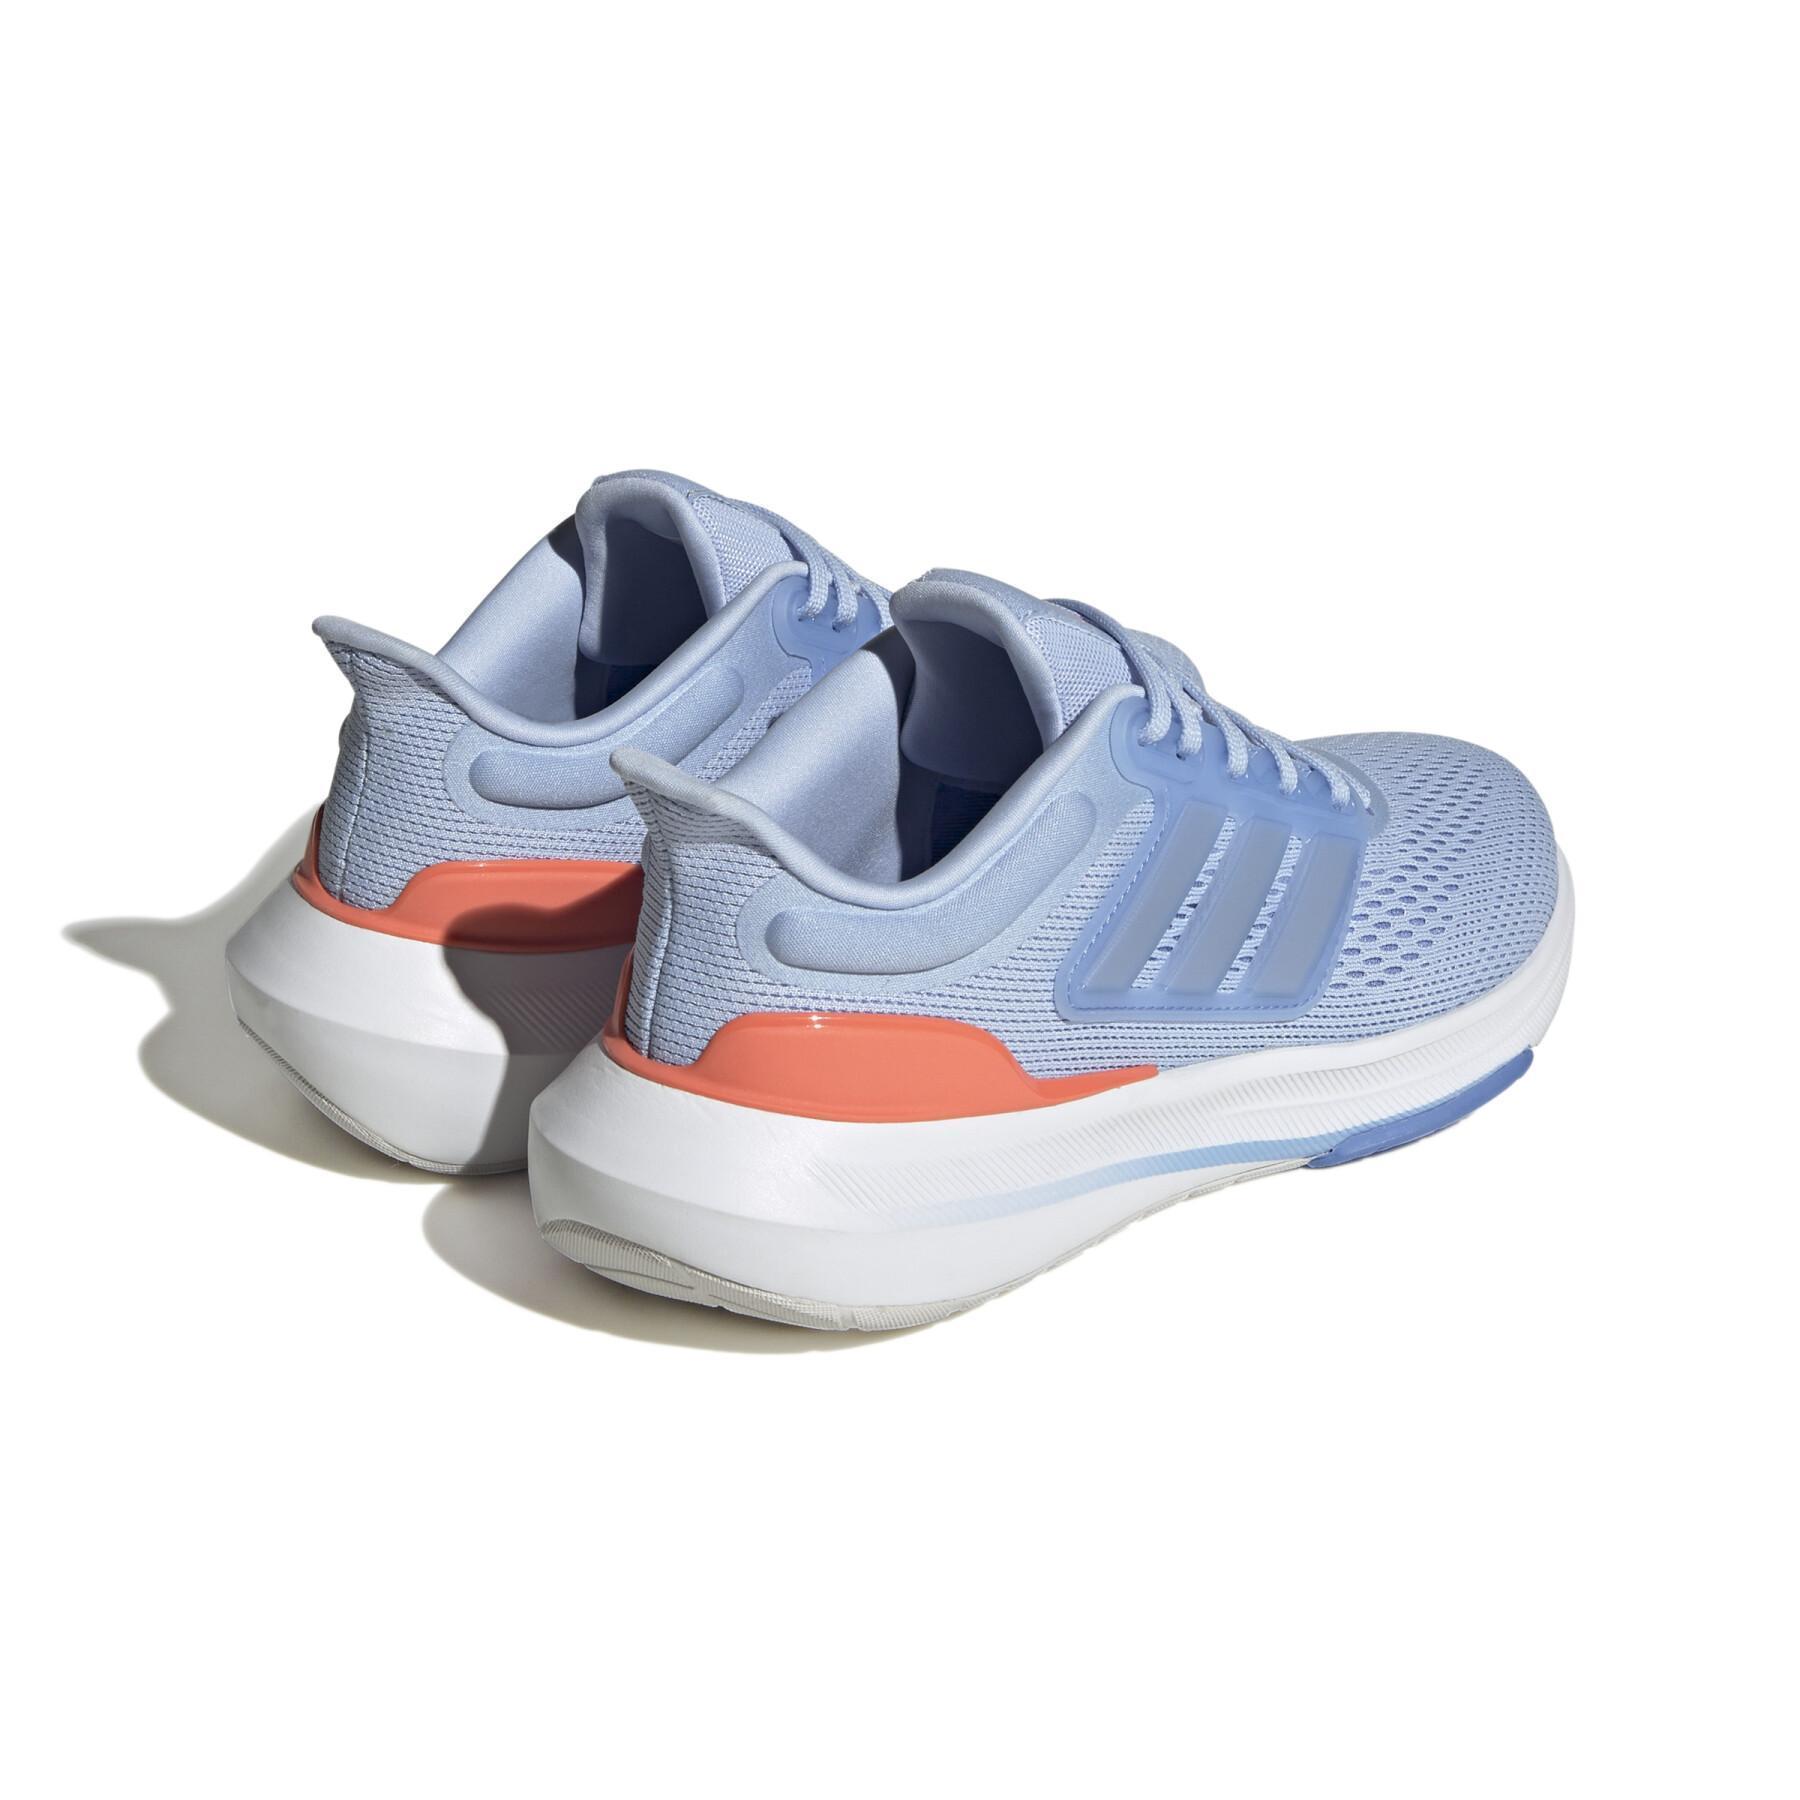 Chaussures de running femme adidas Ultrabounce